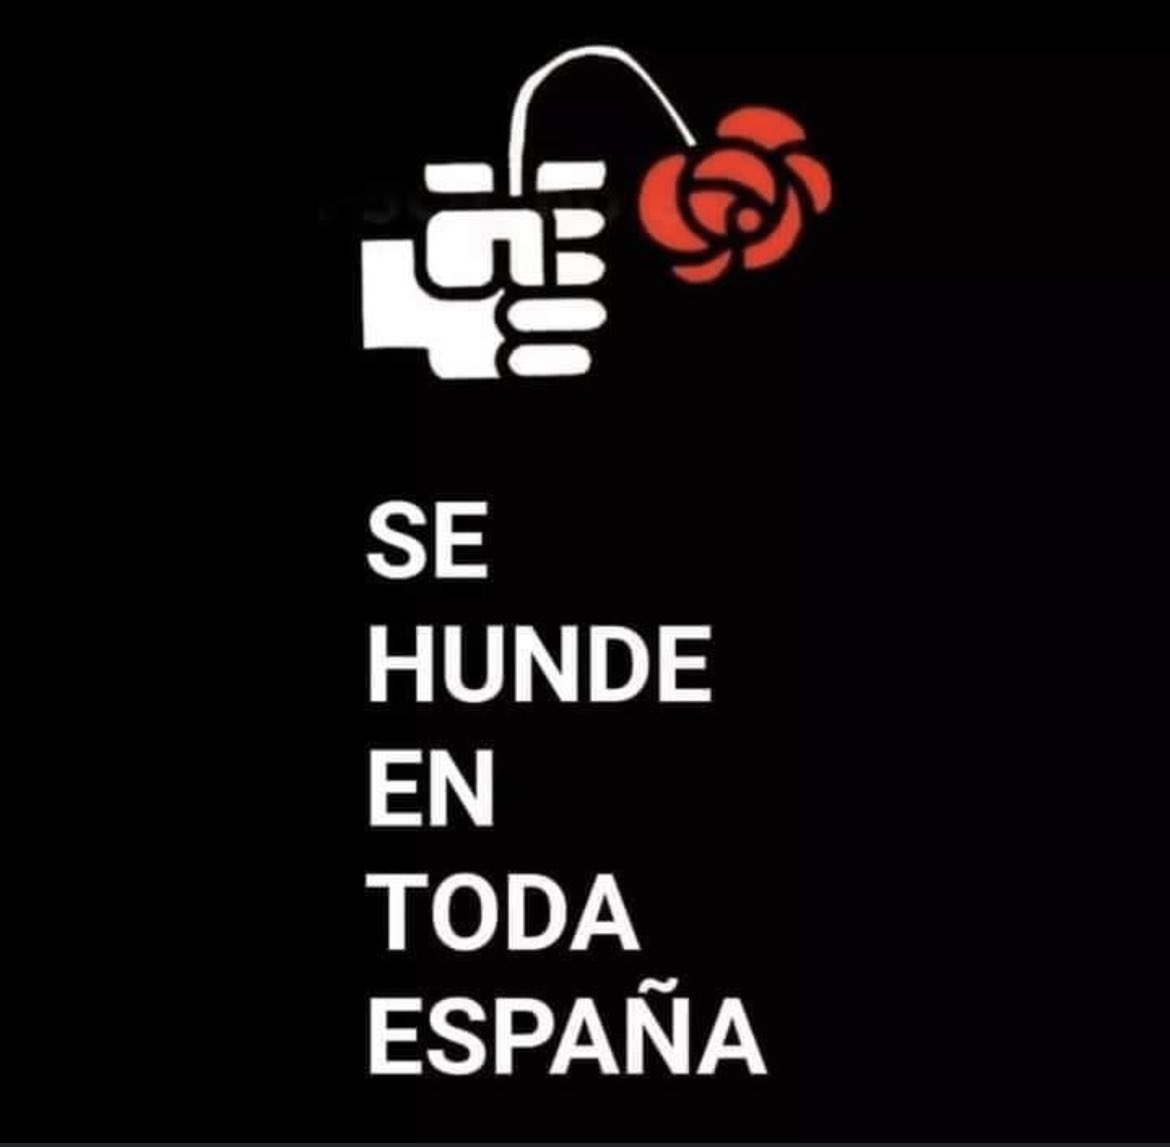 El socialismo, contaminado y degradado por el sanchismo, se hunde en España. La imagen es una de las miles que denuncian al PSOE actual en España